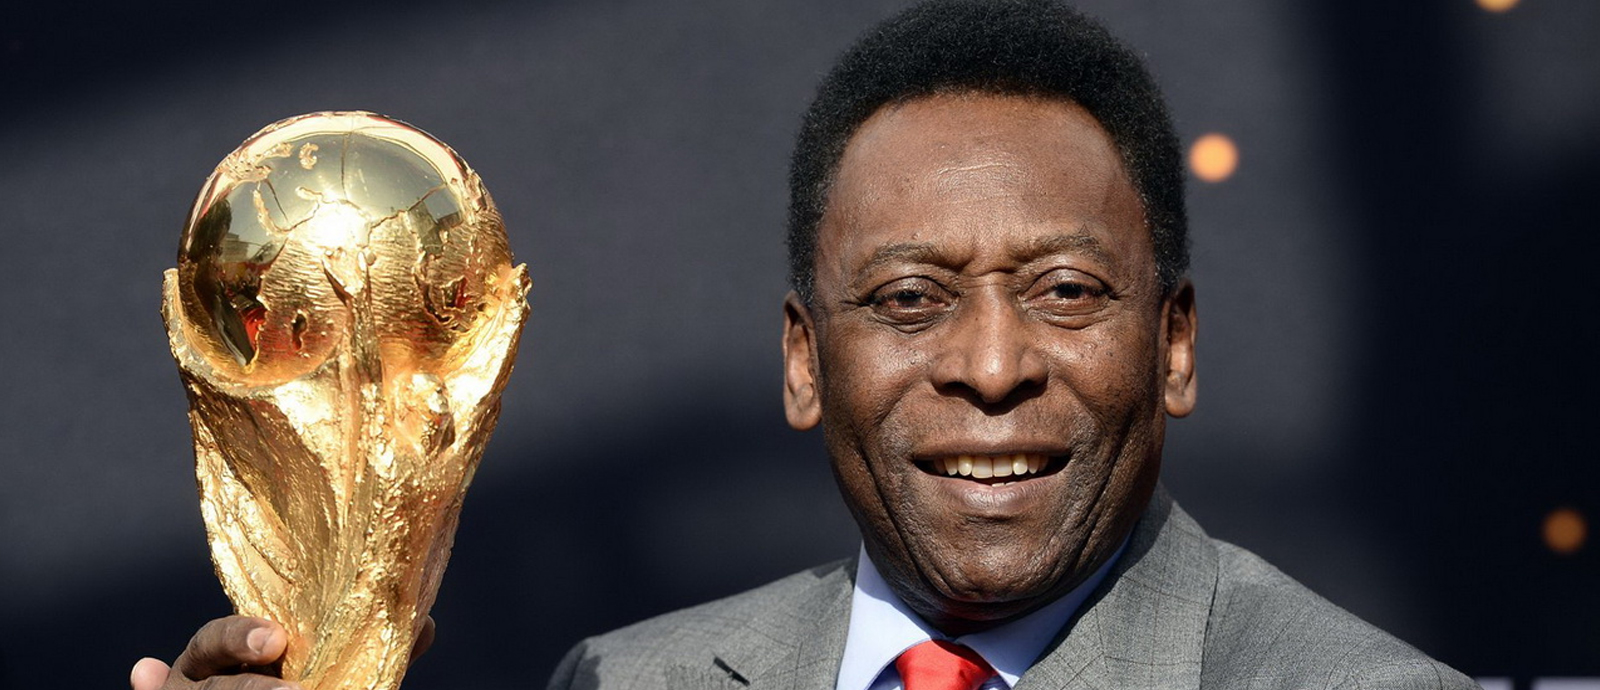 Brazilian soccer legend Pelé